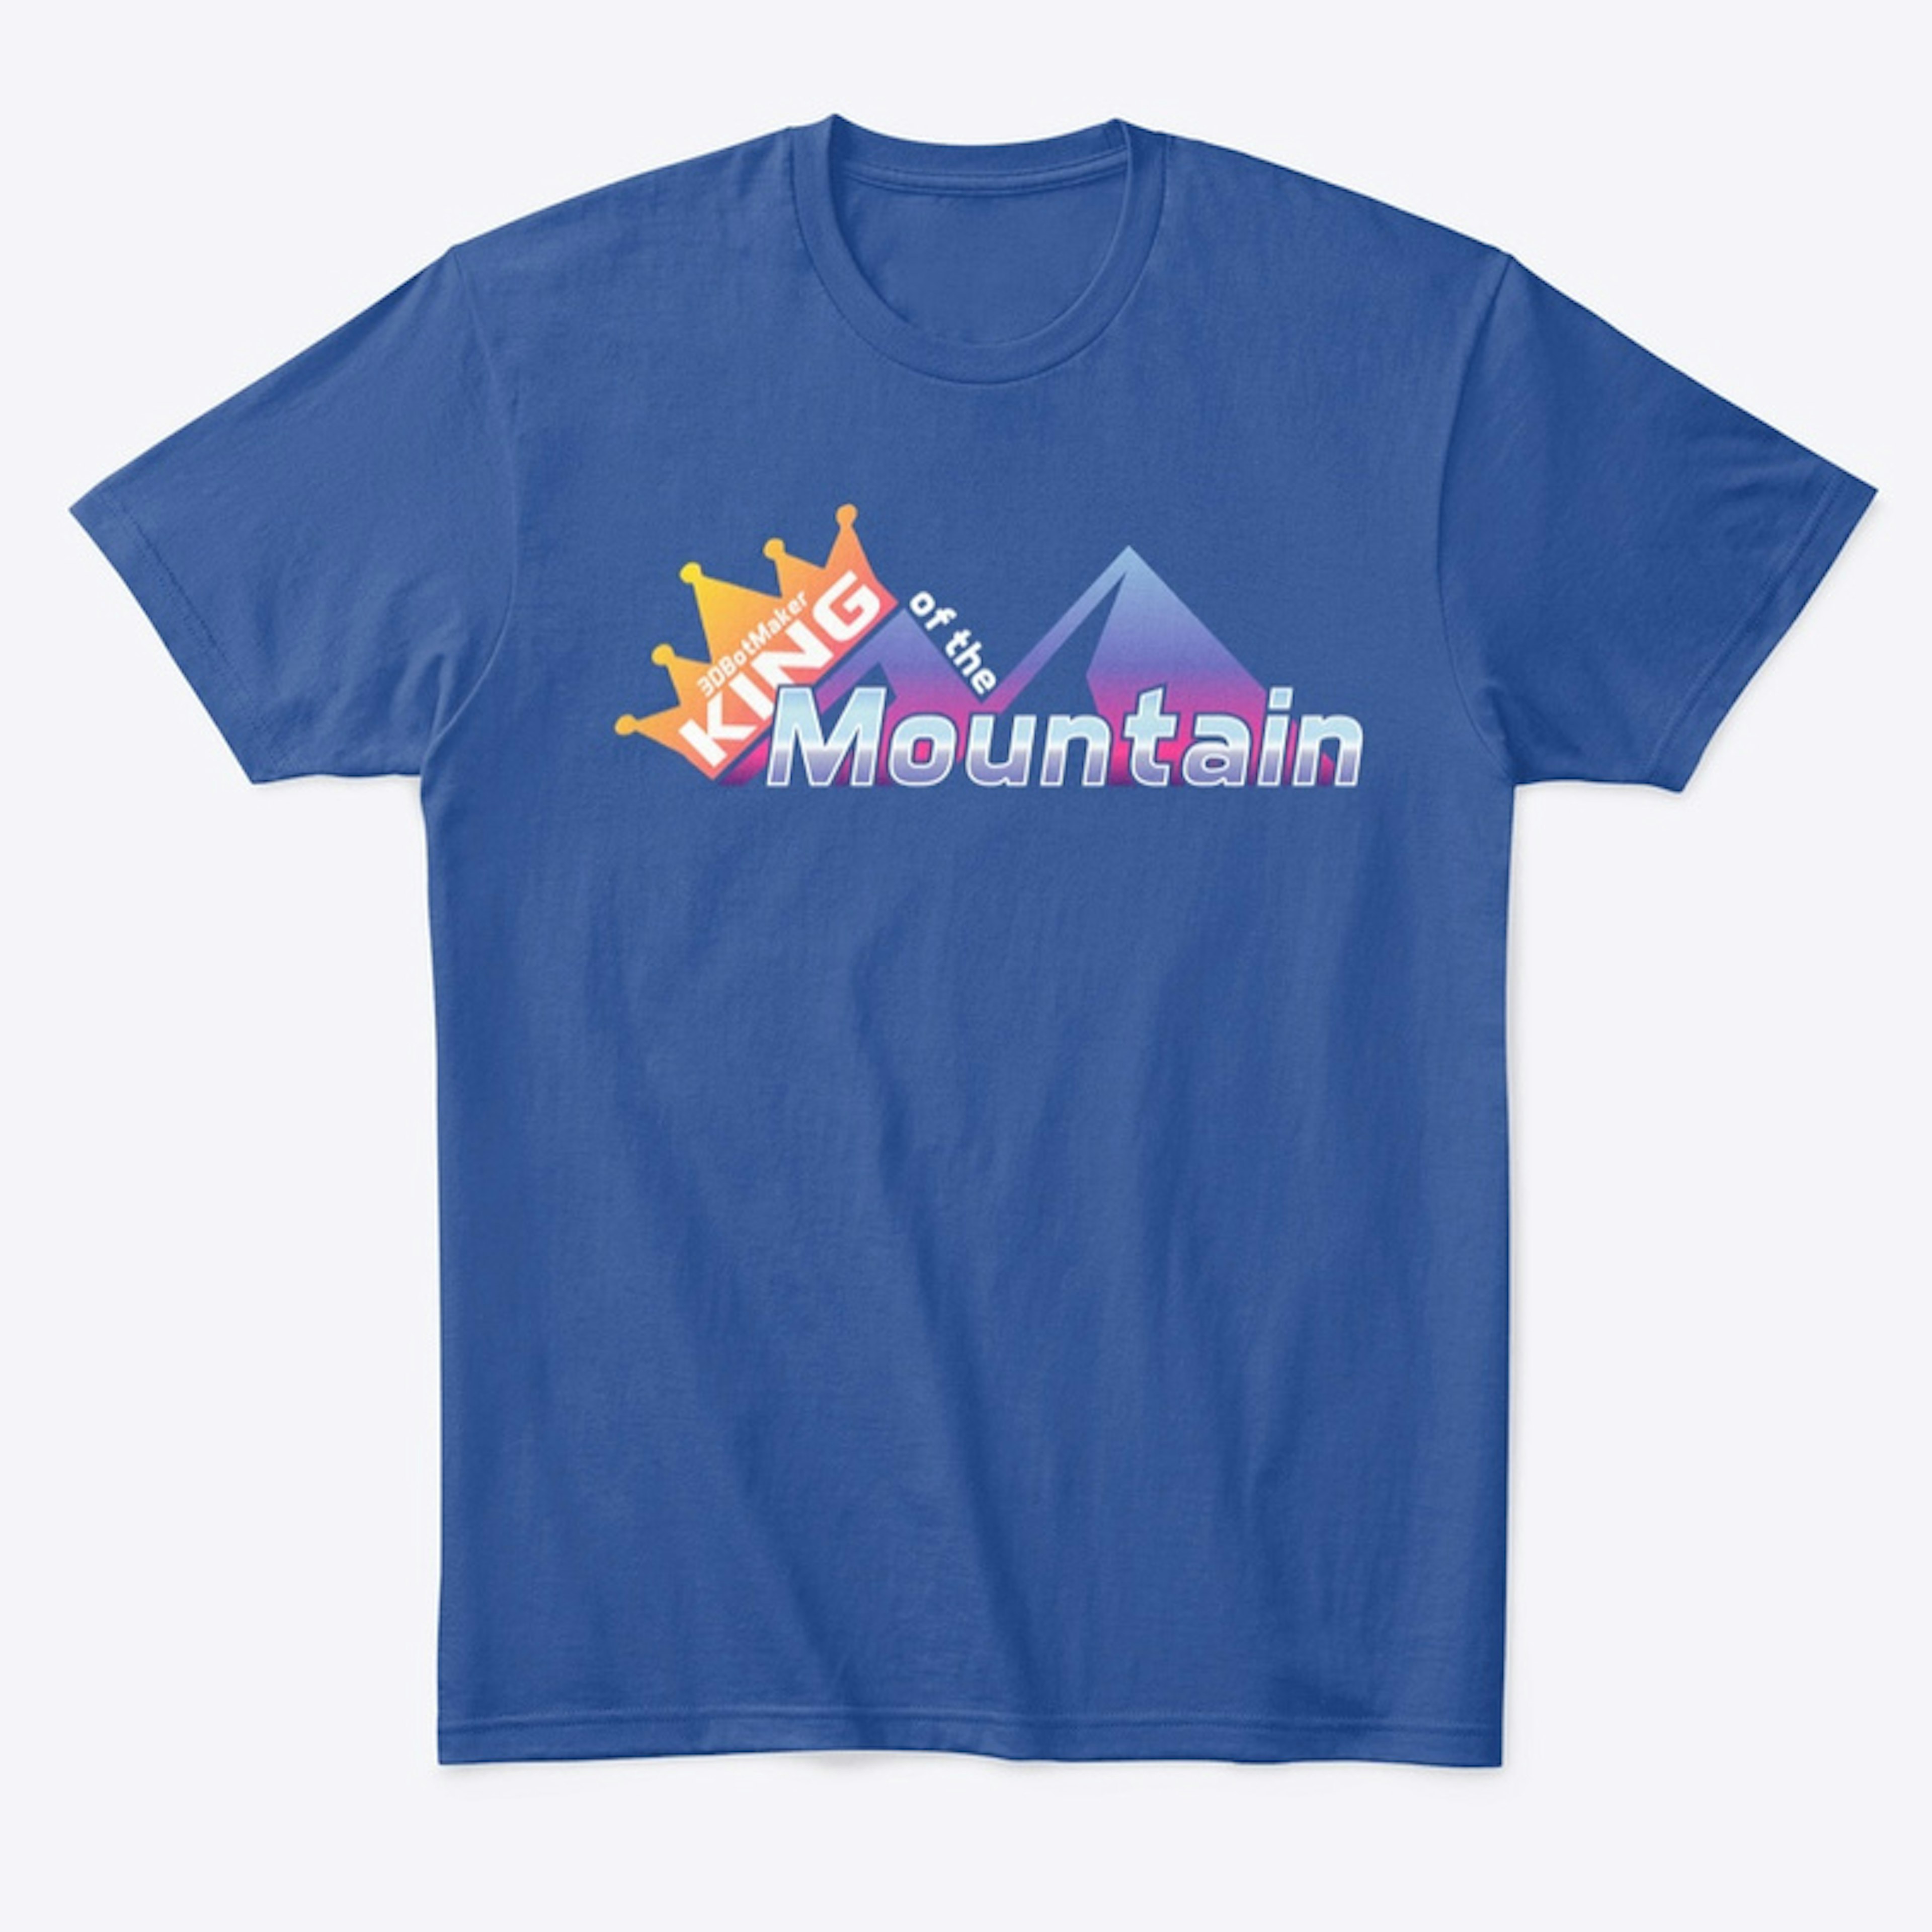 King of the Mountain Season 4